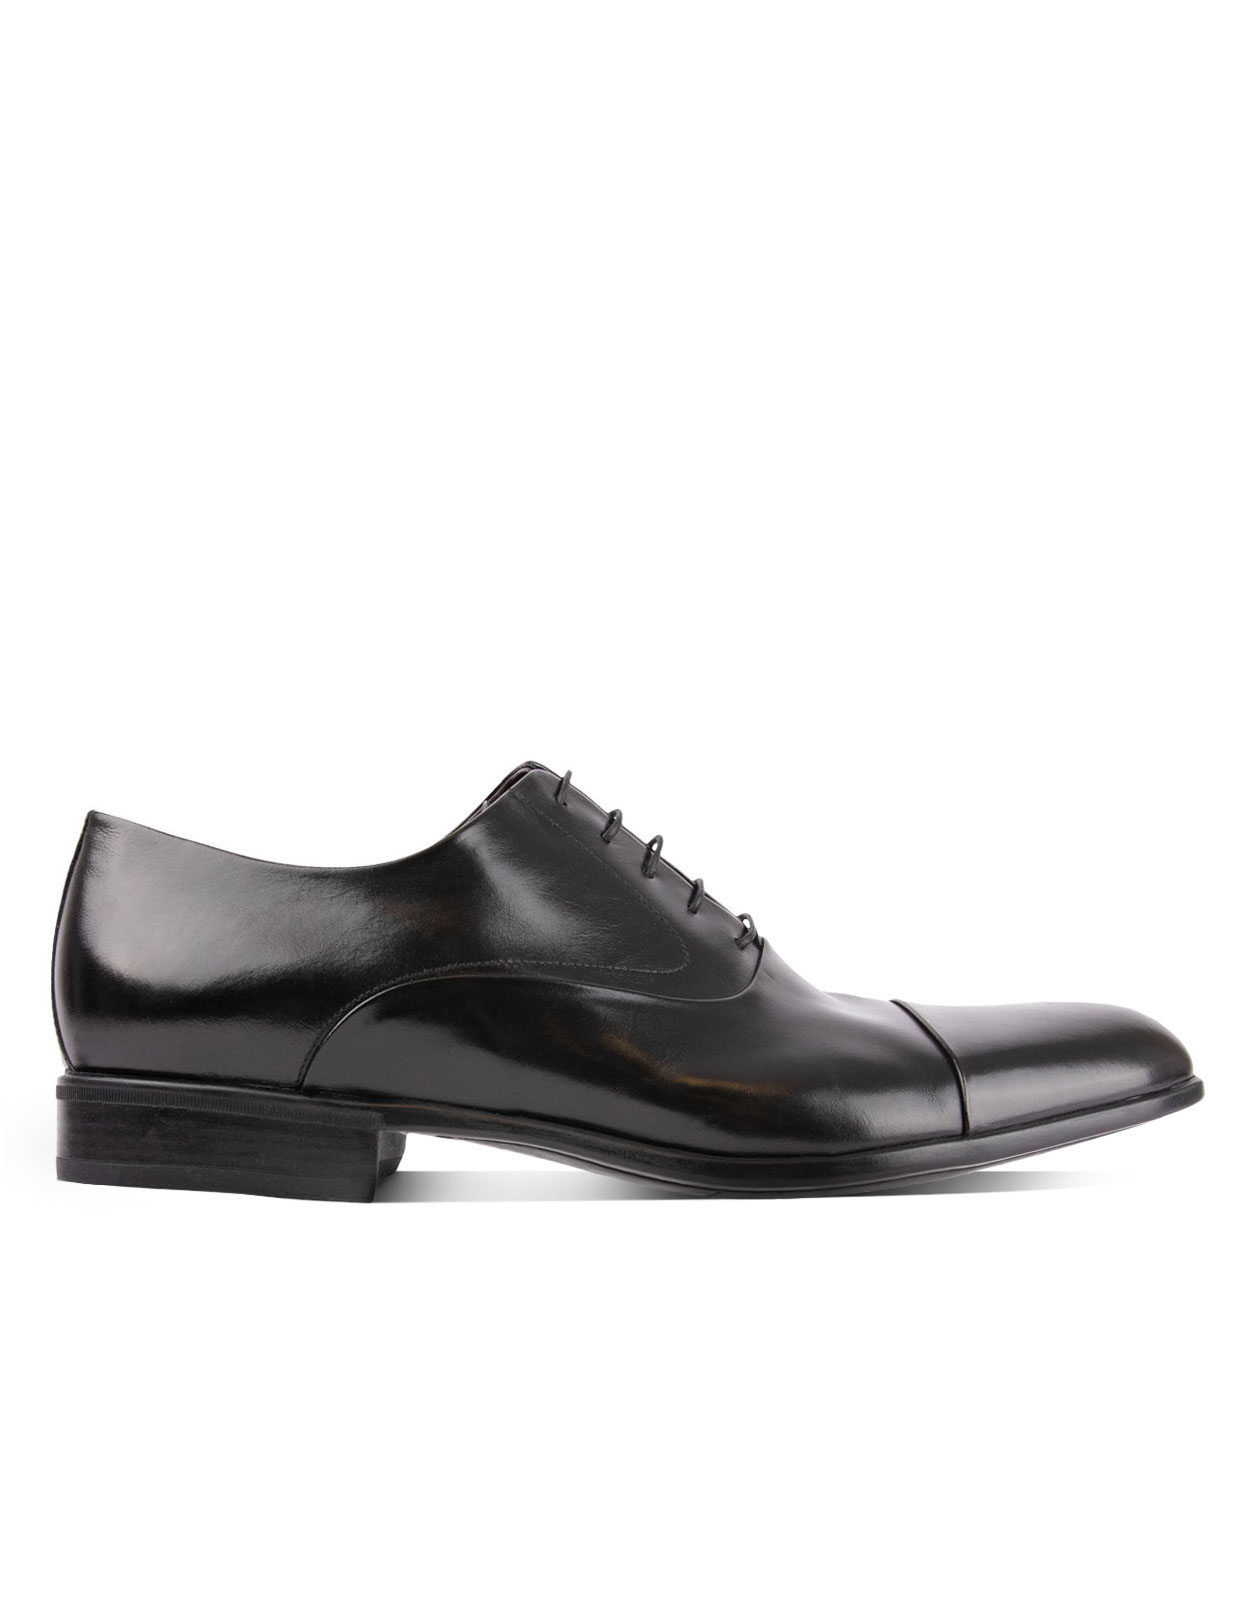 Bruges Oxford Shoe Black Stl 10